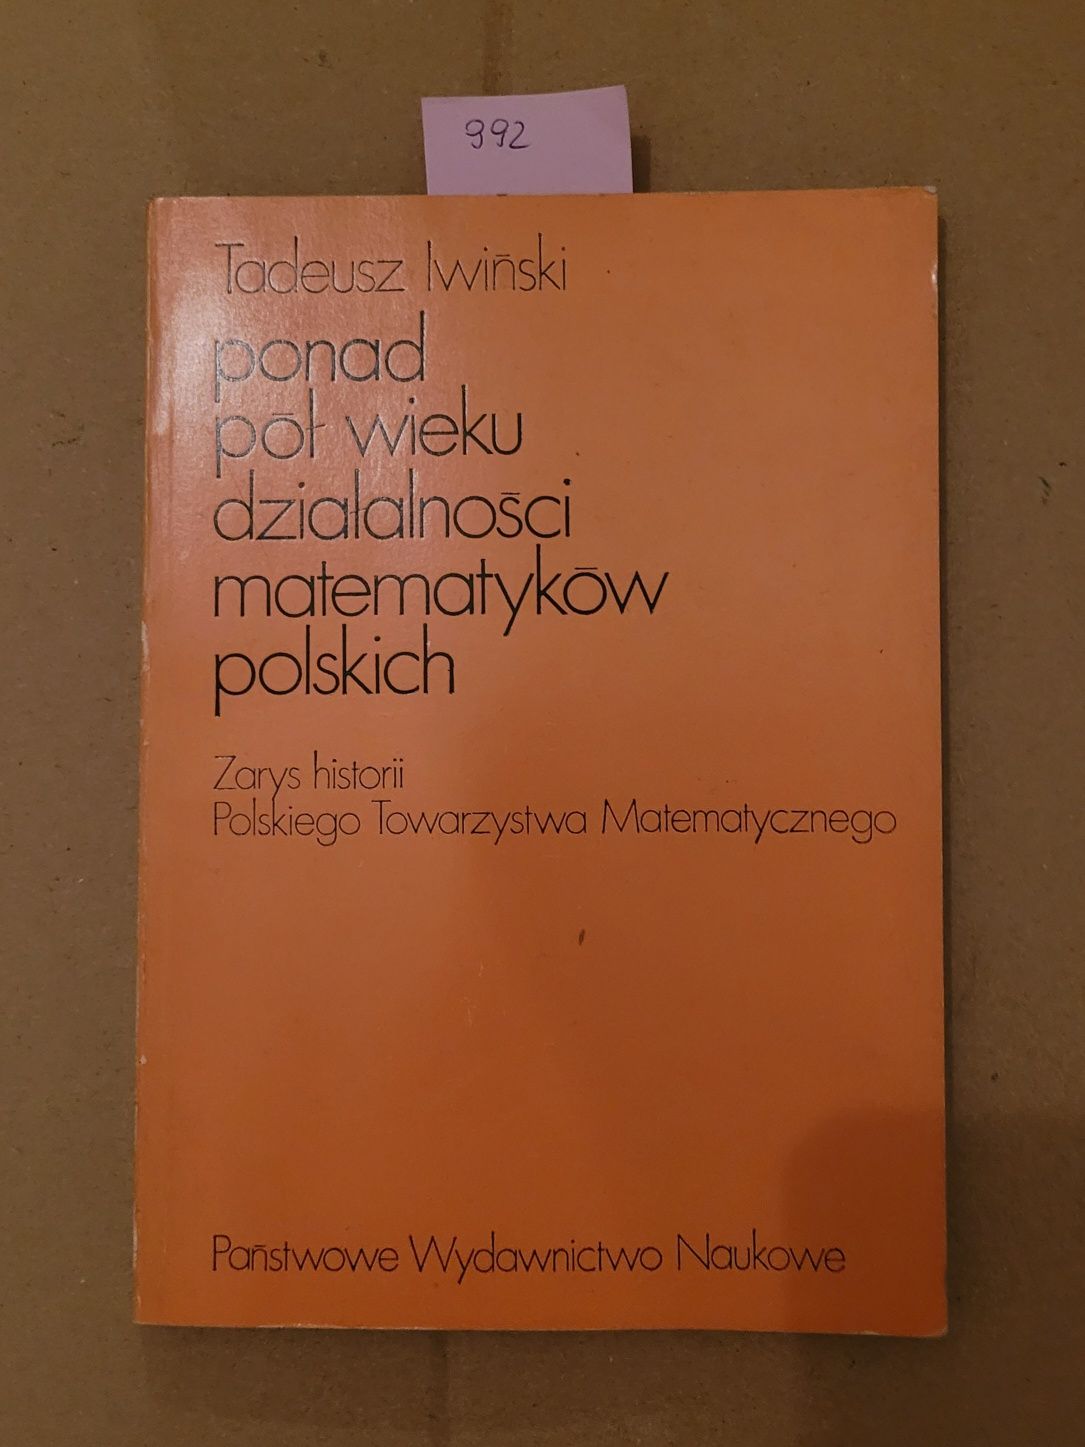 992. "Ponad pół wieku działalności matematyków polskich" T.Iwiński